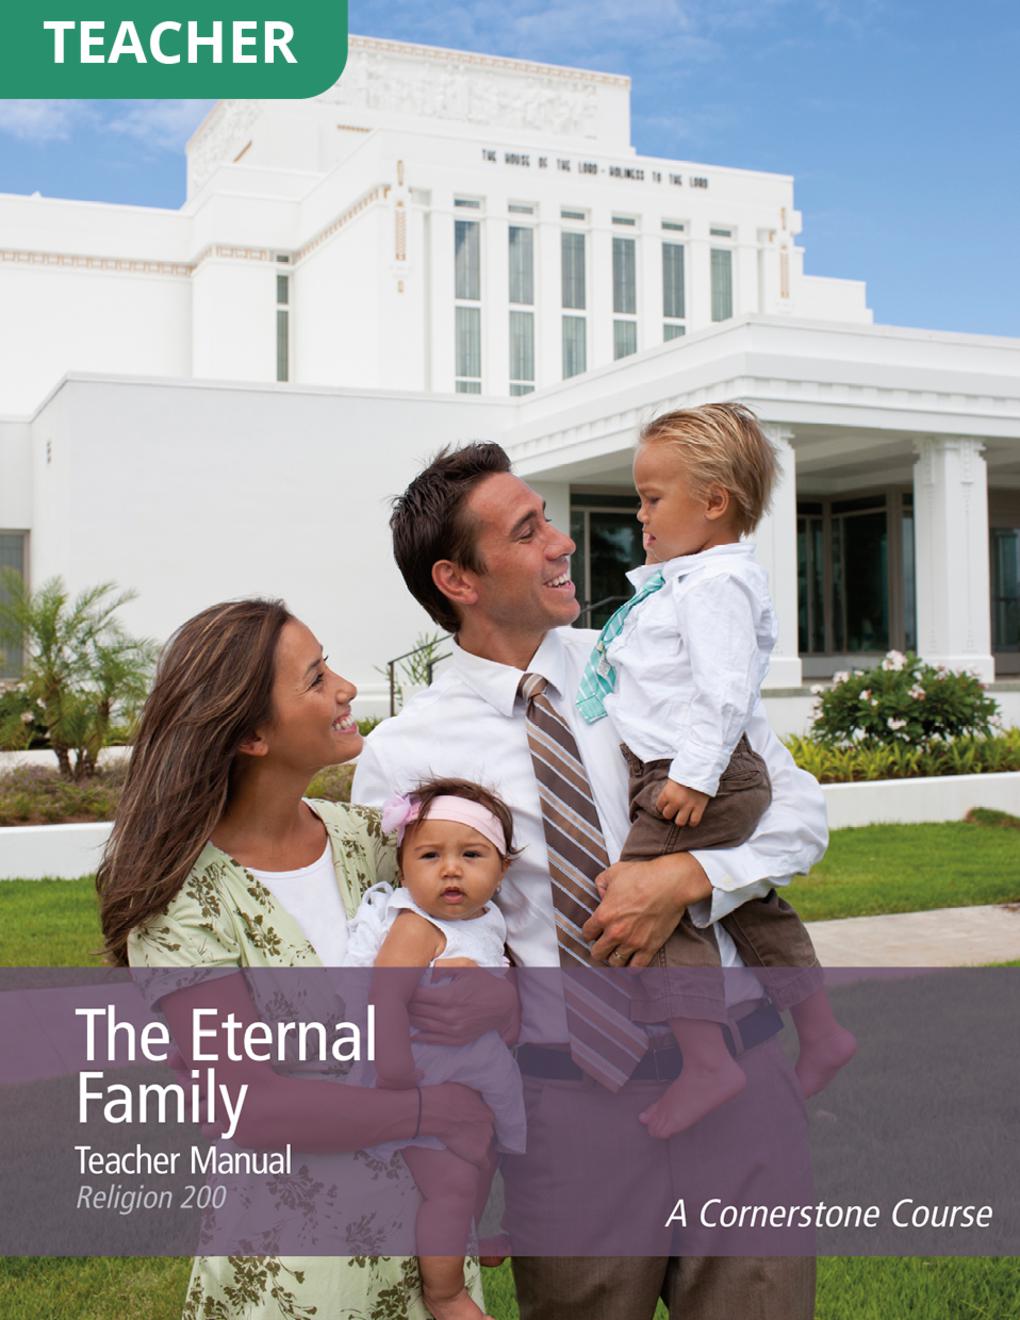 The Eternal Family Teacher Manual (Rel 200)